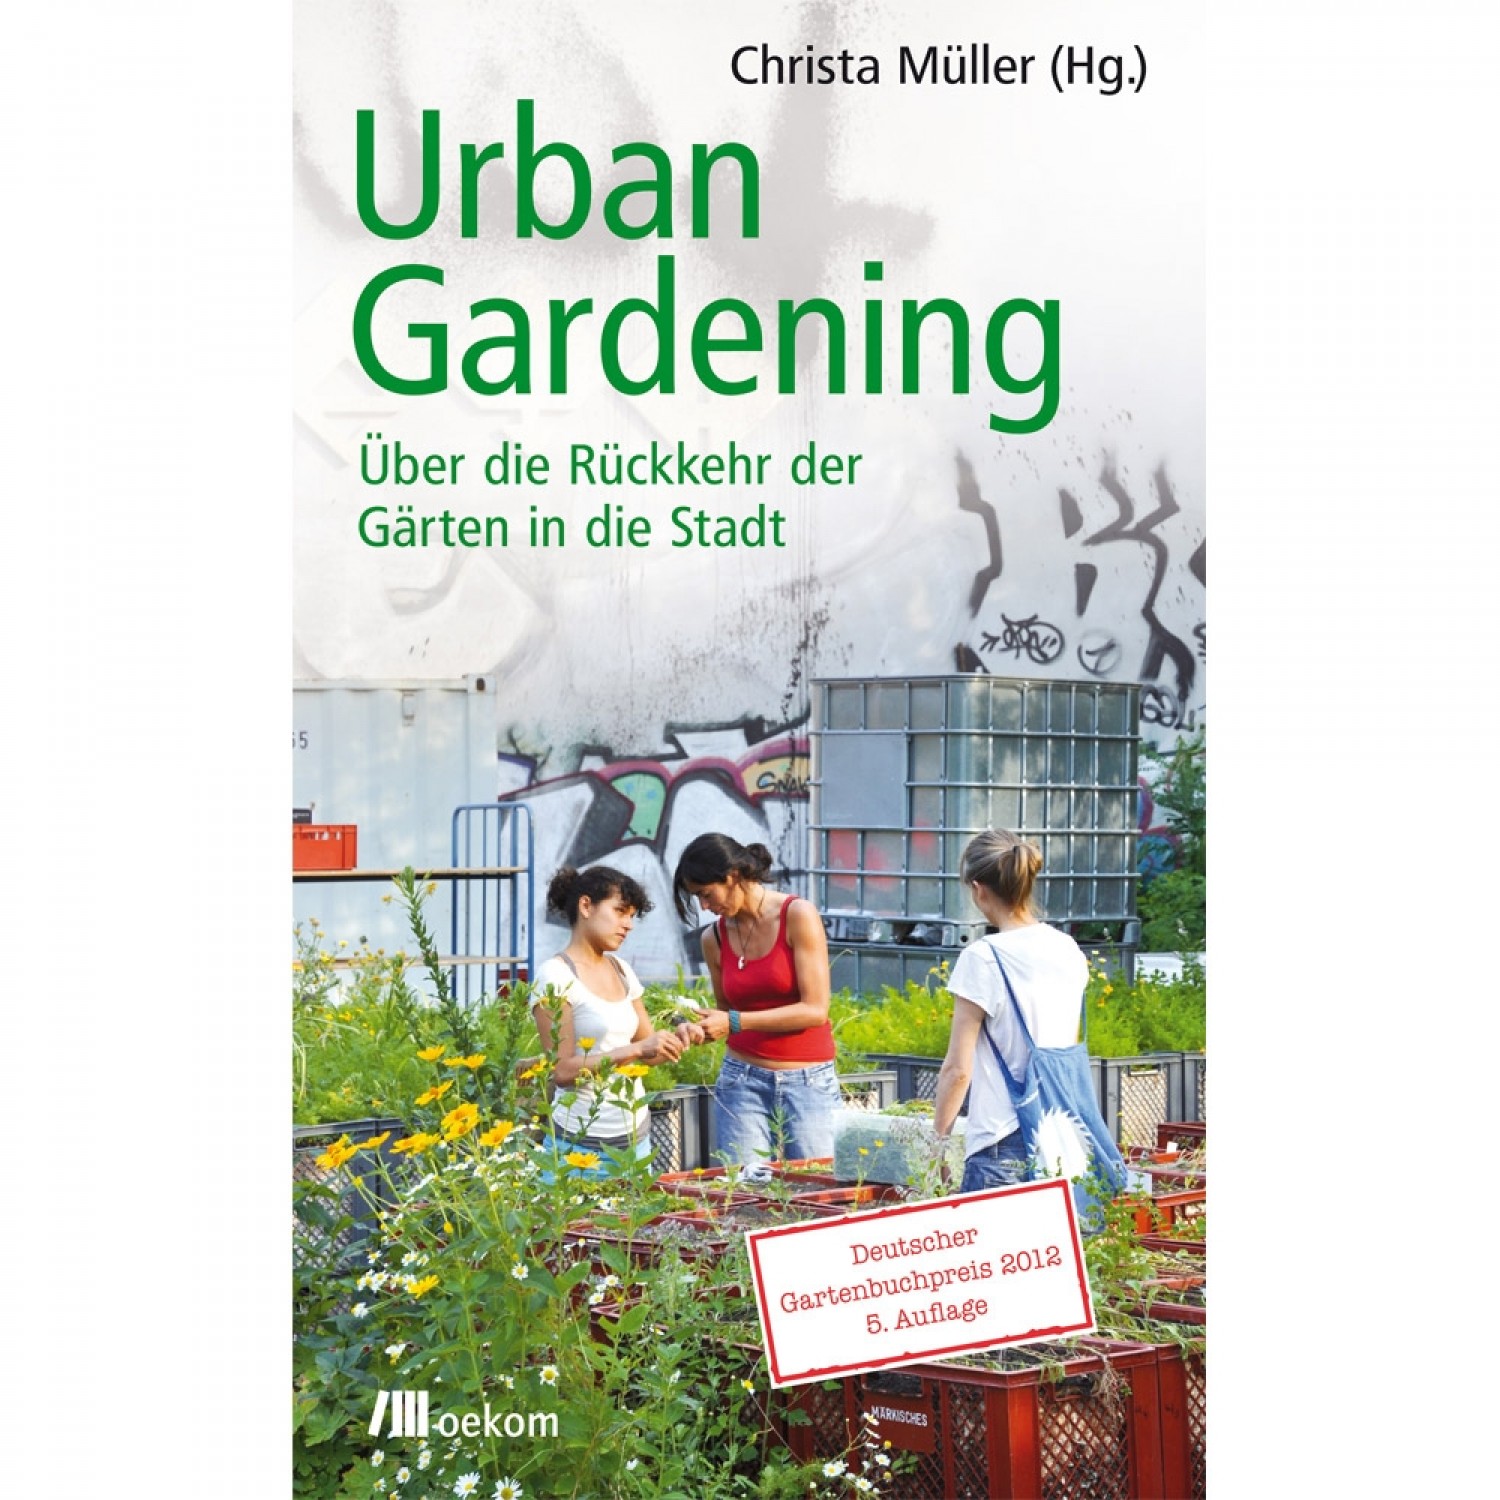 Urban Gardening - Christa Müller | oekom Verlag